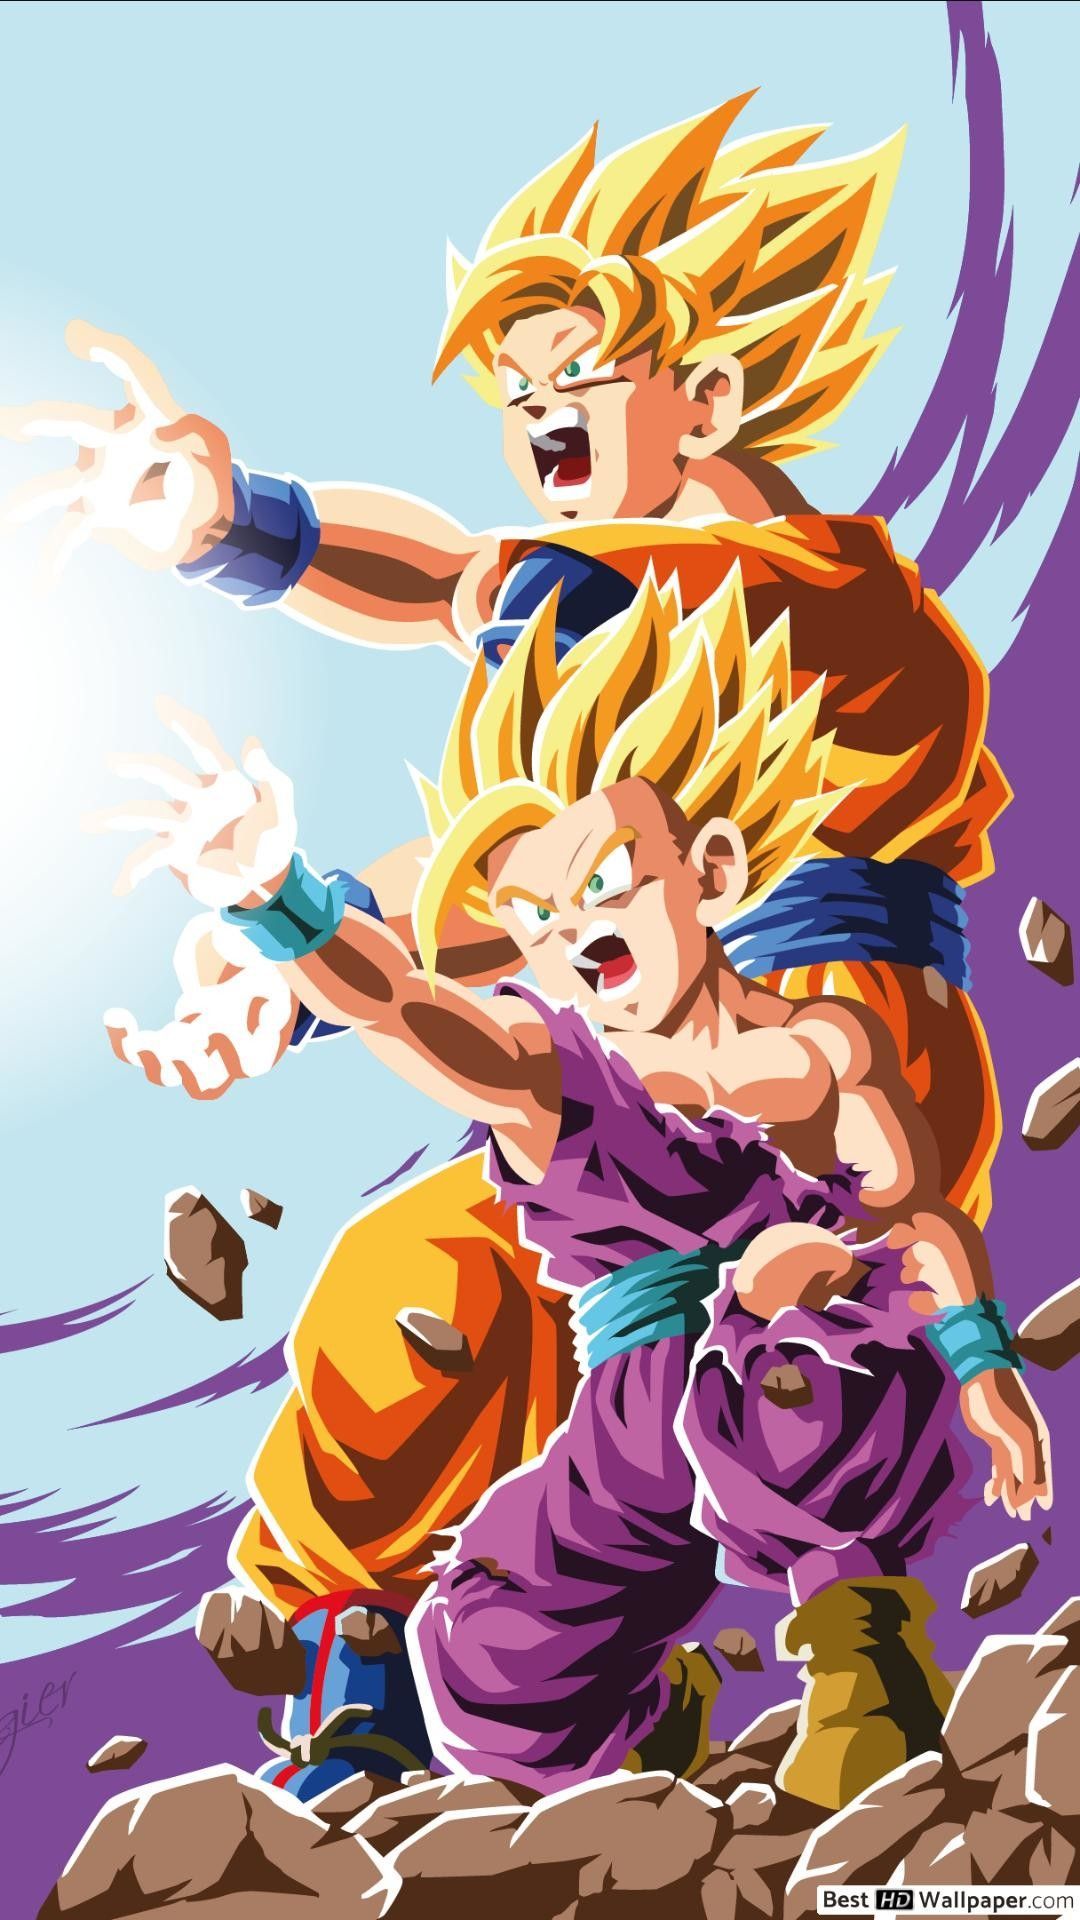 Goku 4k - iPhone Wallpapers : iPhone Wallpapers  Dragones, Caricaturas de  goku, Figuras de goku